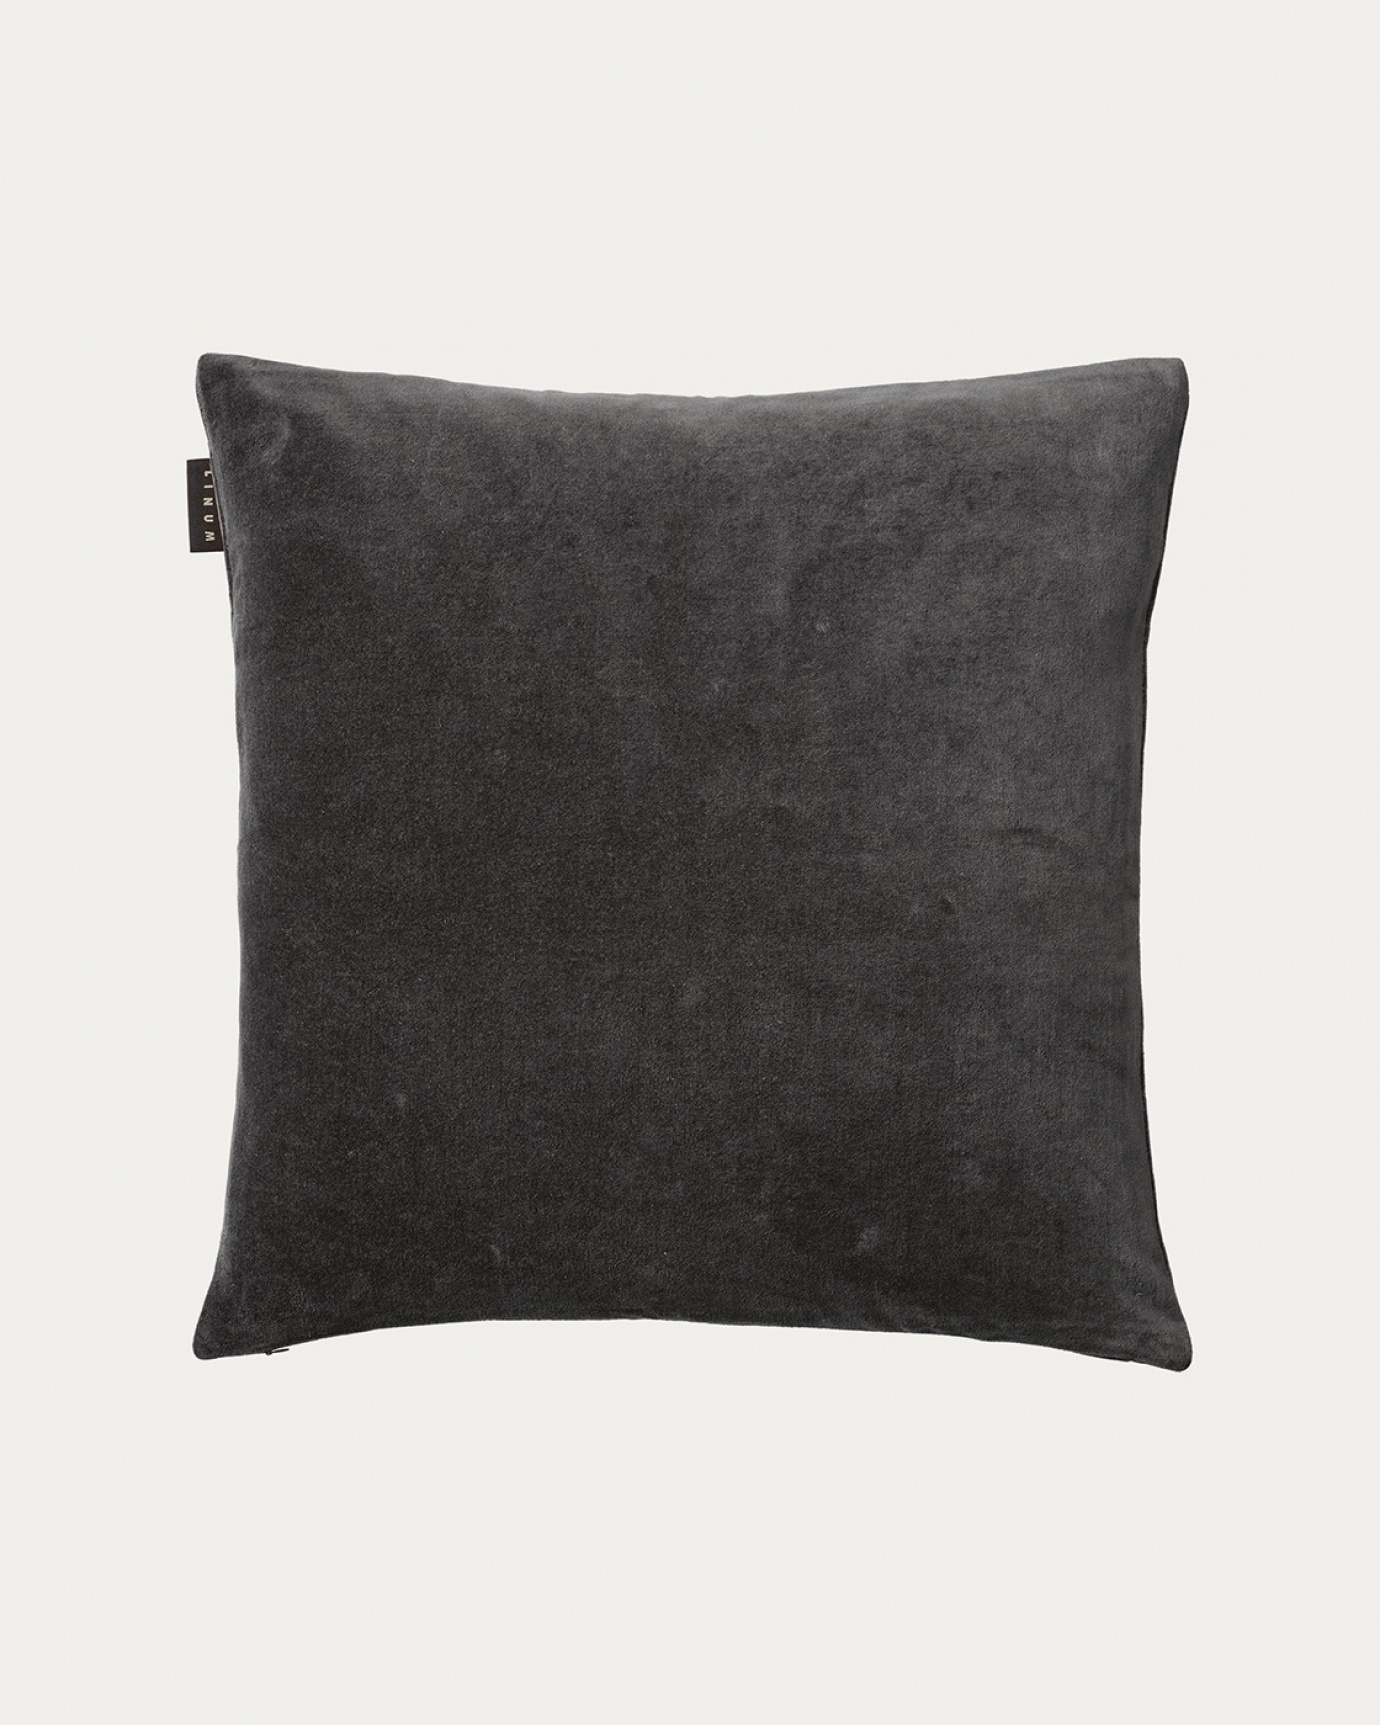 Immagine prodotto grigio antracite scuro PAOLO copricuscini in morbido velluto di cotone di LINUM DESIGN. Dimensioni 50x50 cm.